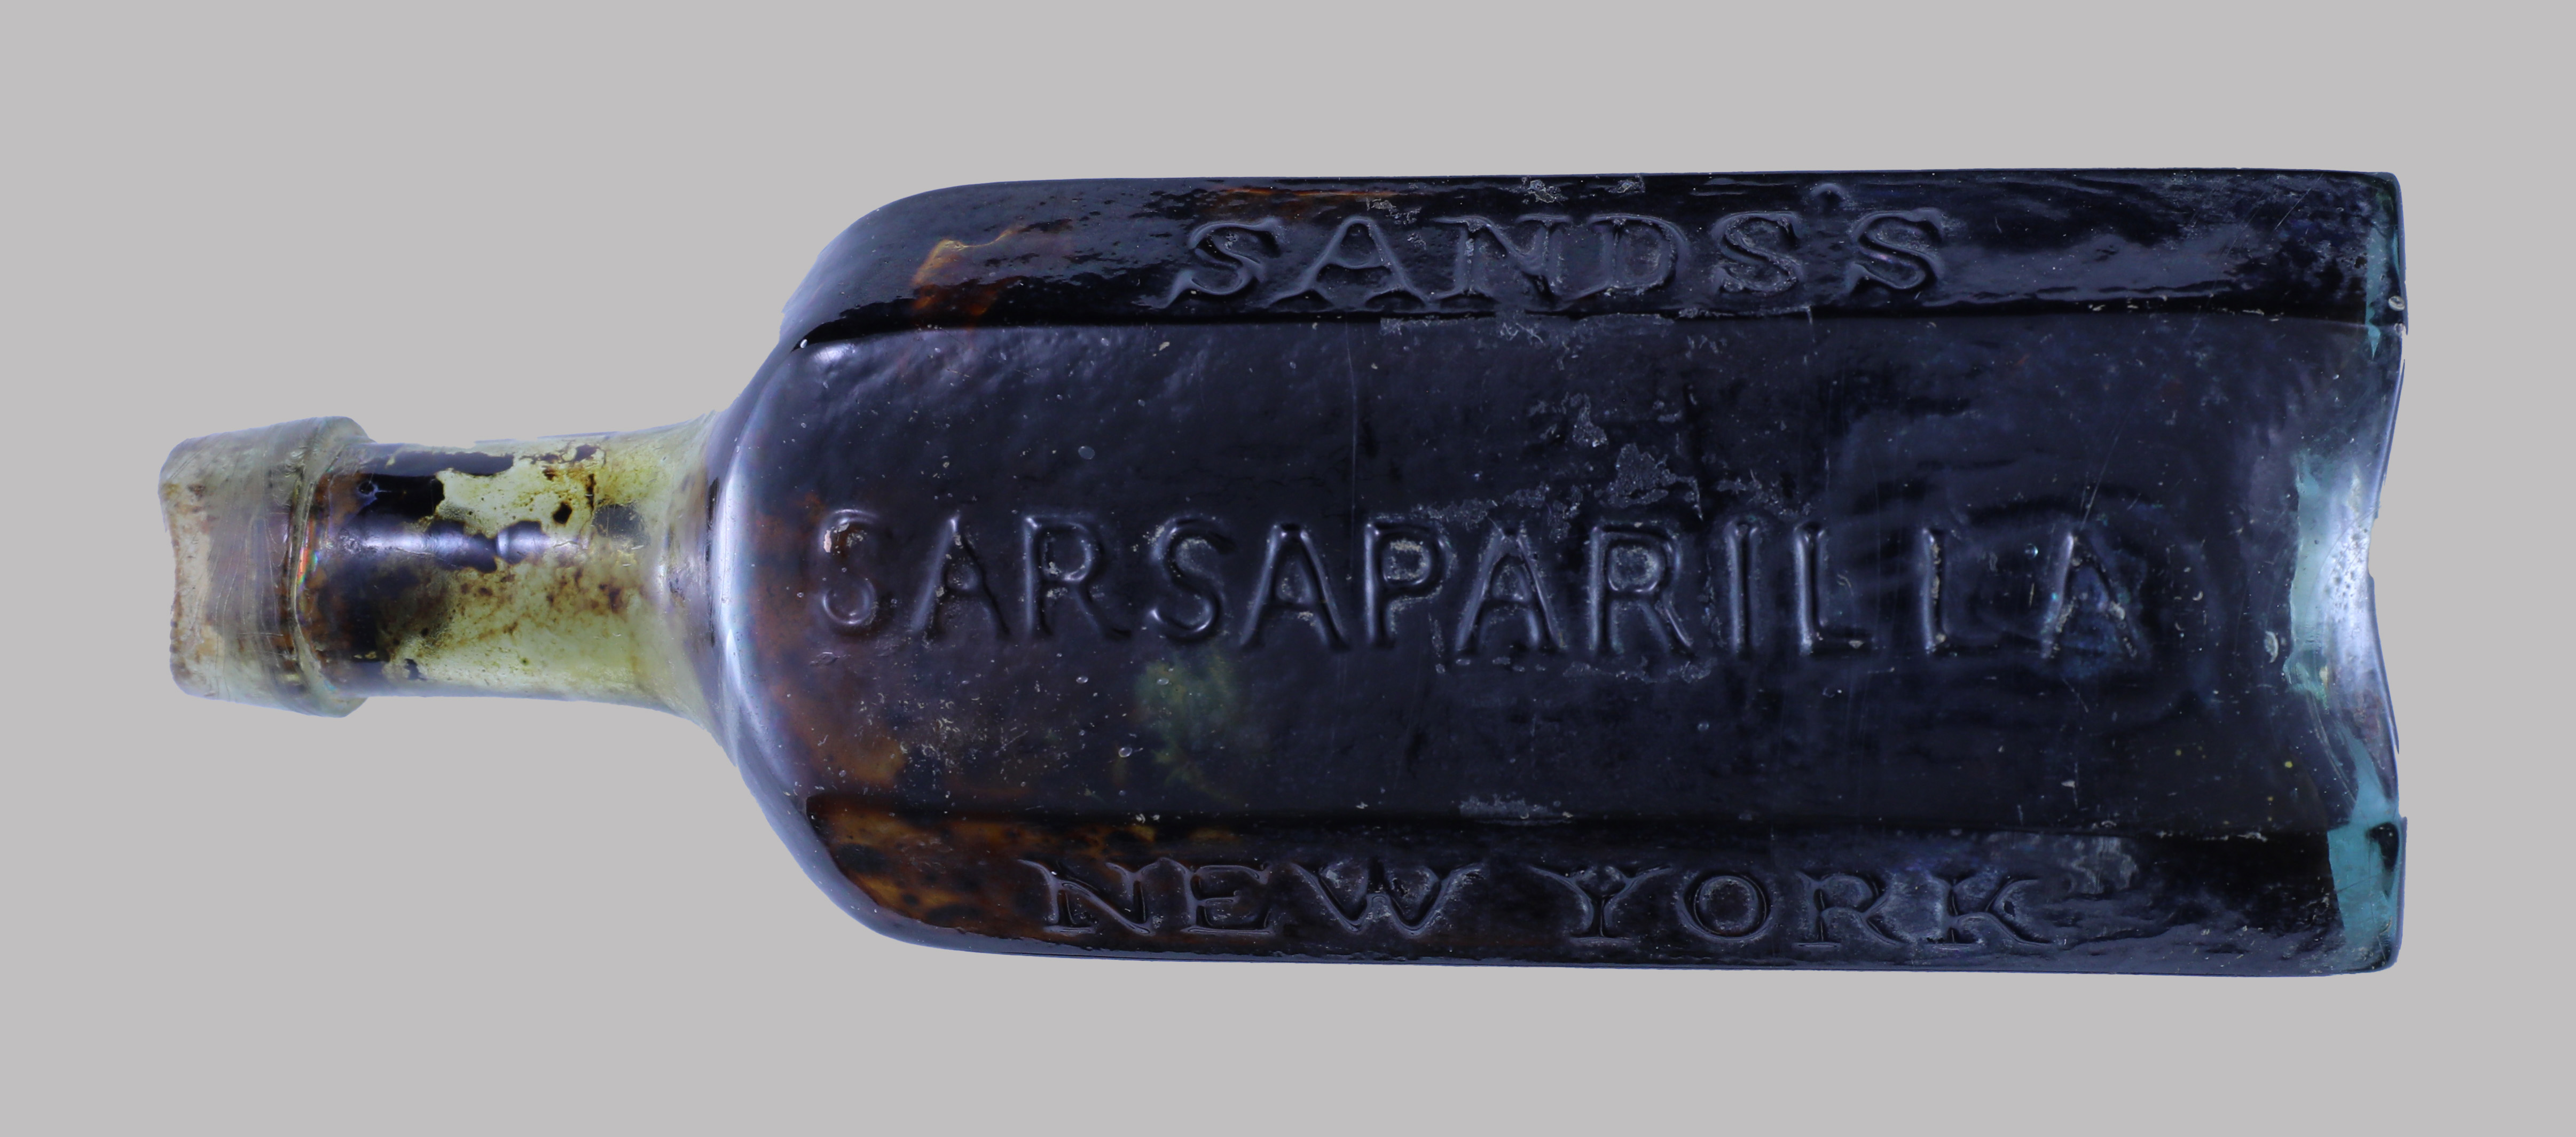 Sarsaparilla bottle